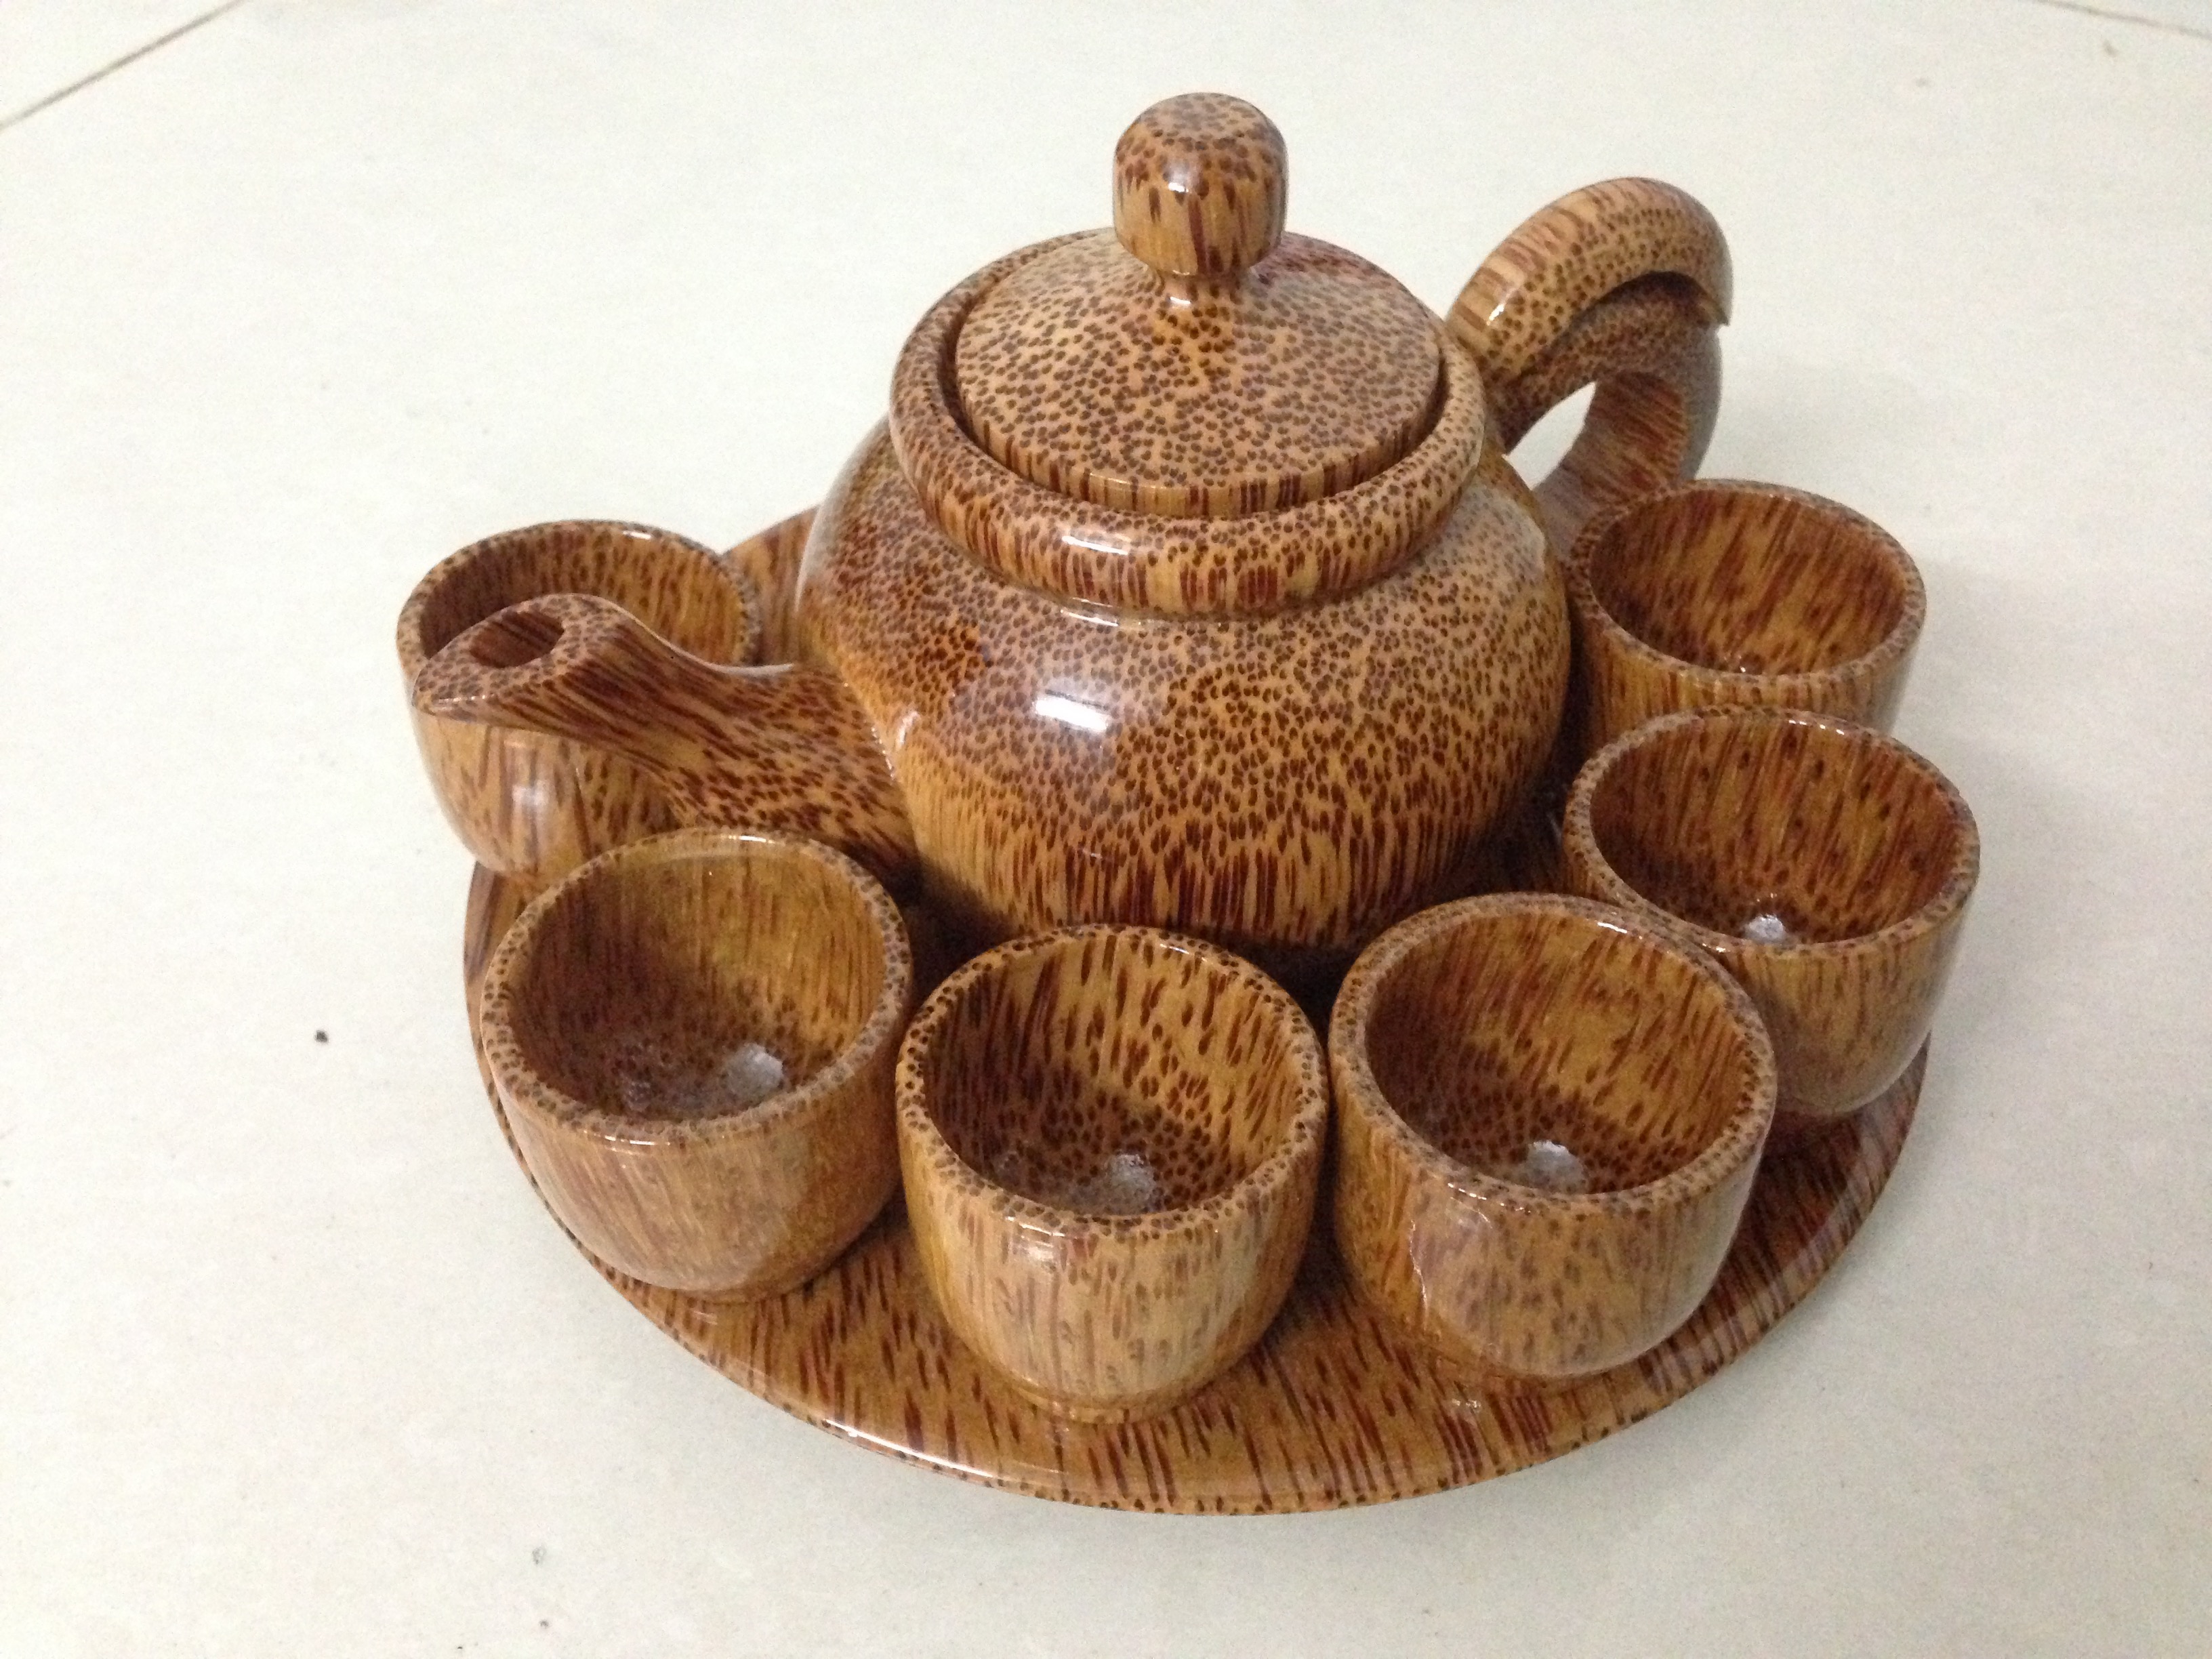 Bộ Bình Trà Bằng Gỗ Dừa Khay Hình Tròn - Gồm 1 ấm trà, 1 đĩa hình tròn, 6 ly tách - Quà Tặng Lễ Tết / Trang Trí Handmade